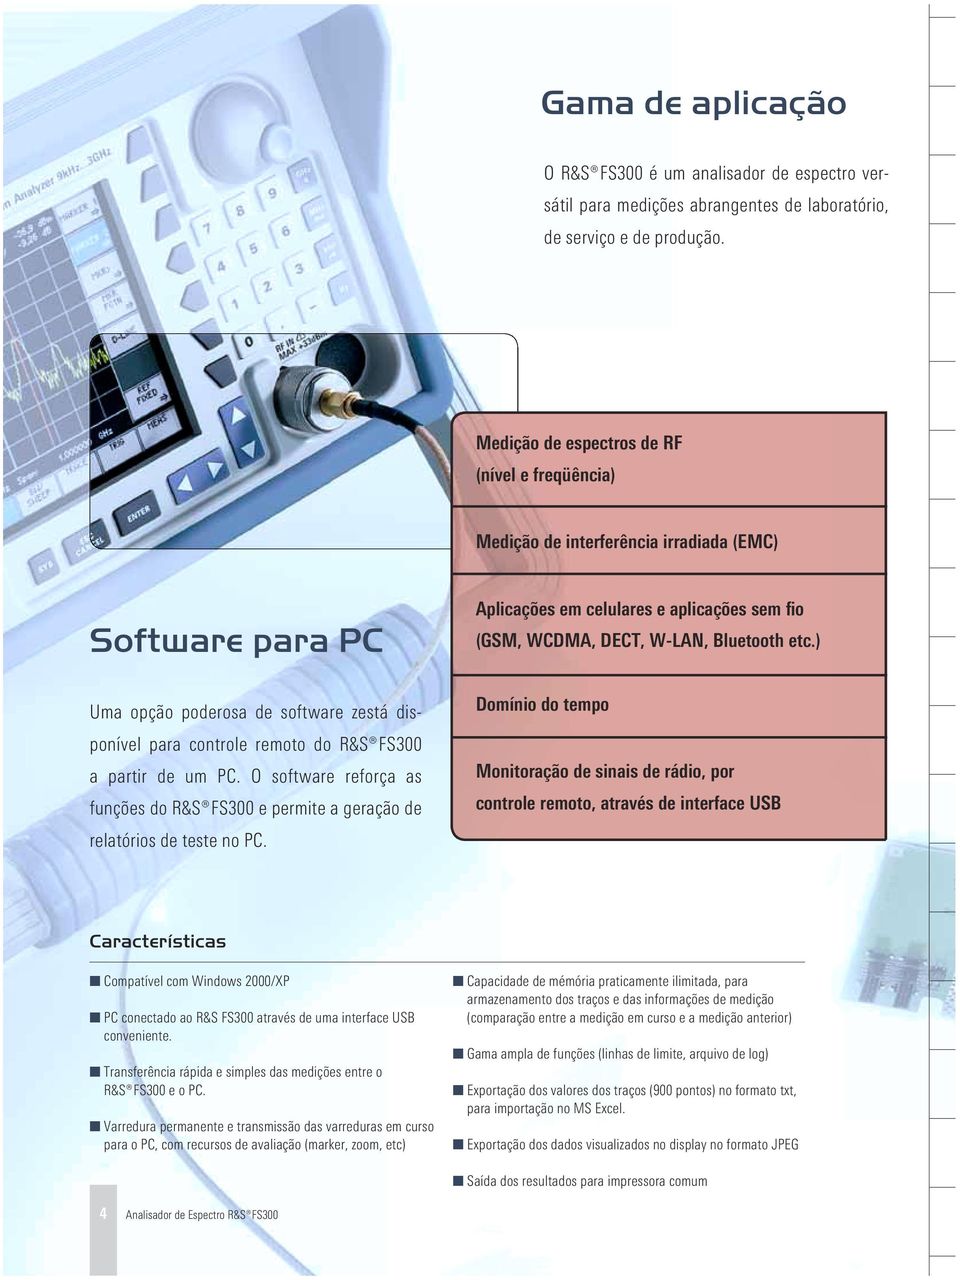 PC. O software reforça as funções do FS300 e permite a geração de relatórios de teste no PC. Aplicações em celulares e aplicações sem fio (GSM, WCDMA, DECT, W-LAN, Bluetooth etc.